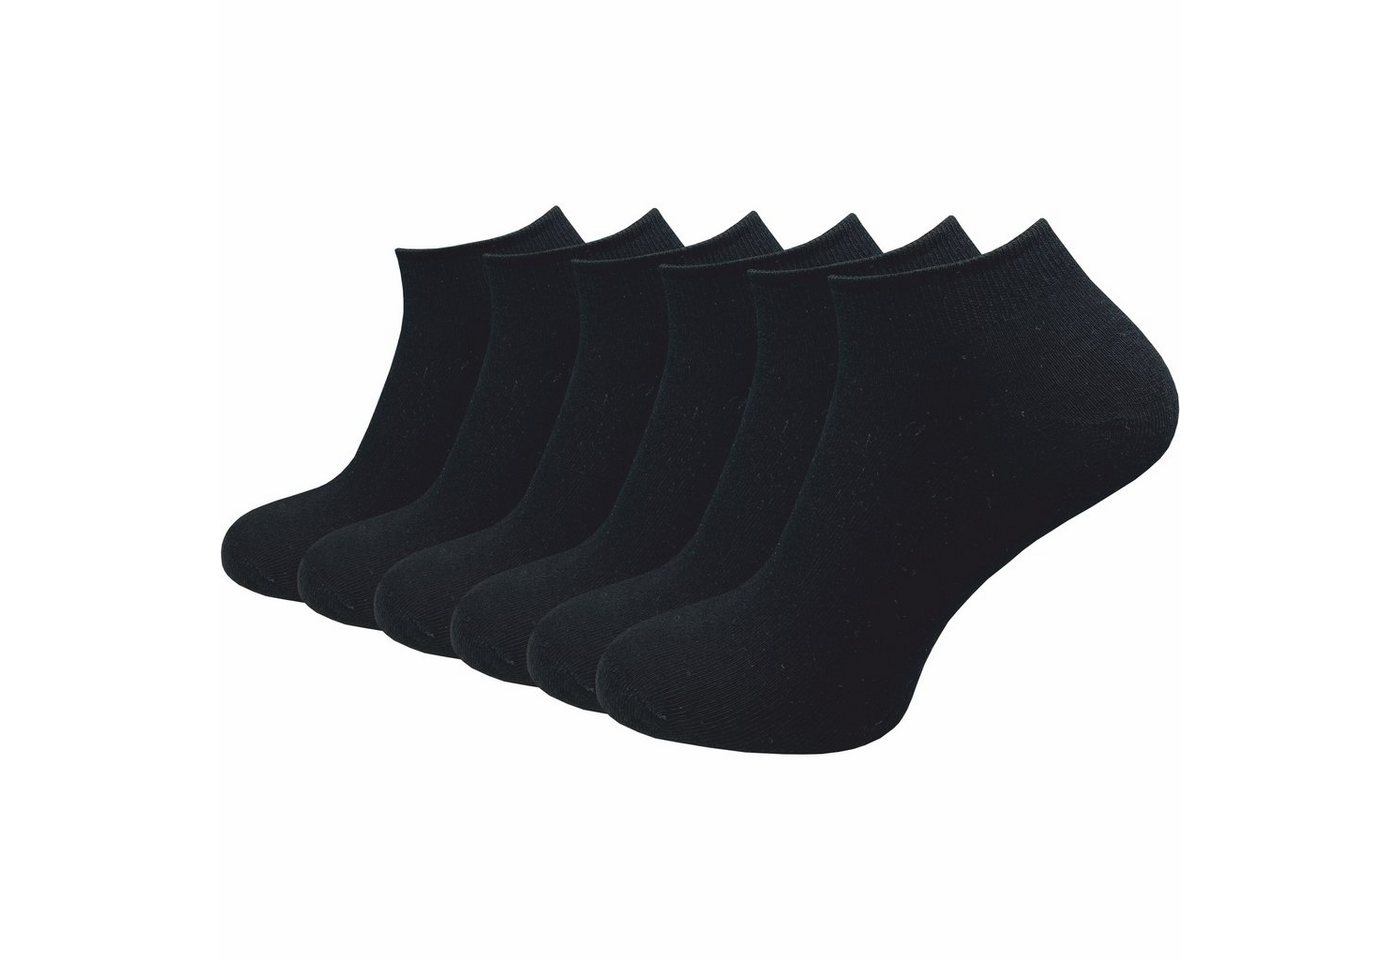 GAWILO Sneakersocken für Damen & Herren in schwarz & weiß - Kurzsocke ohne drückende Naht (6 Paar) Kein Verrutschen dank Komfortbund - Ideal zum Tragen von Turnschuhen von GAWILO